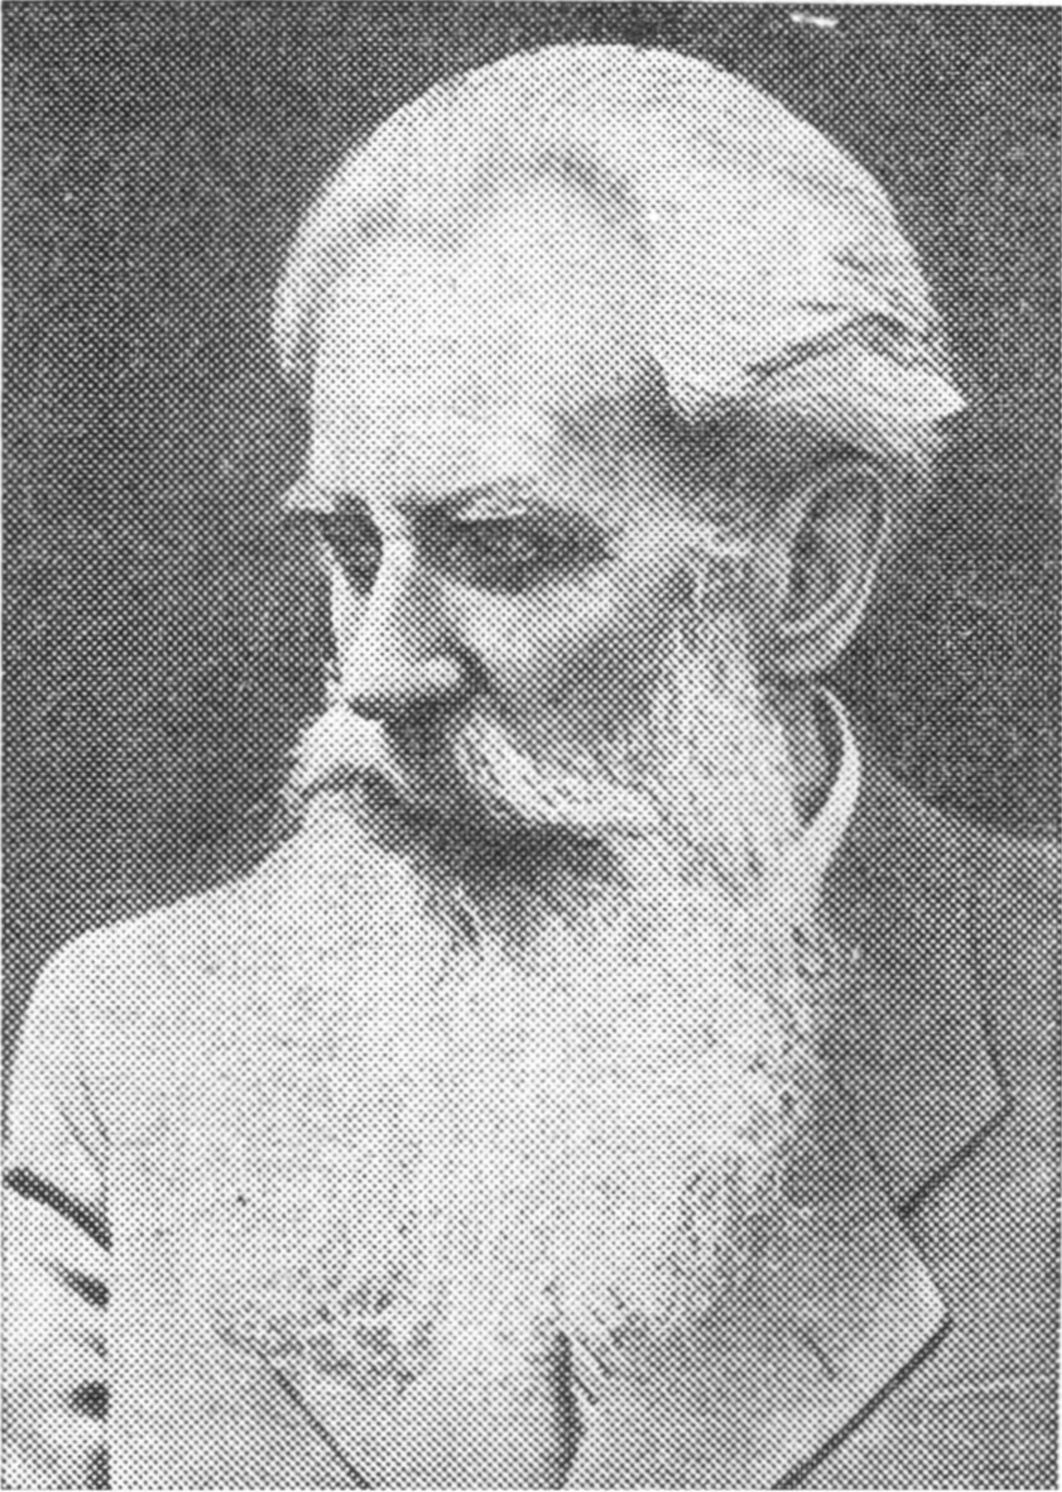 Отто Юльевич Шмидт (1891—1956)